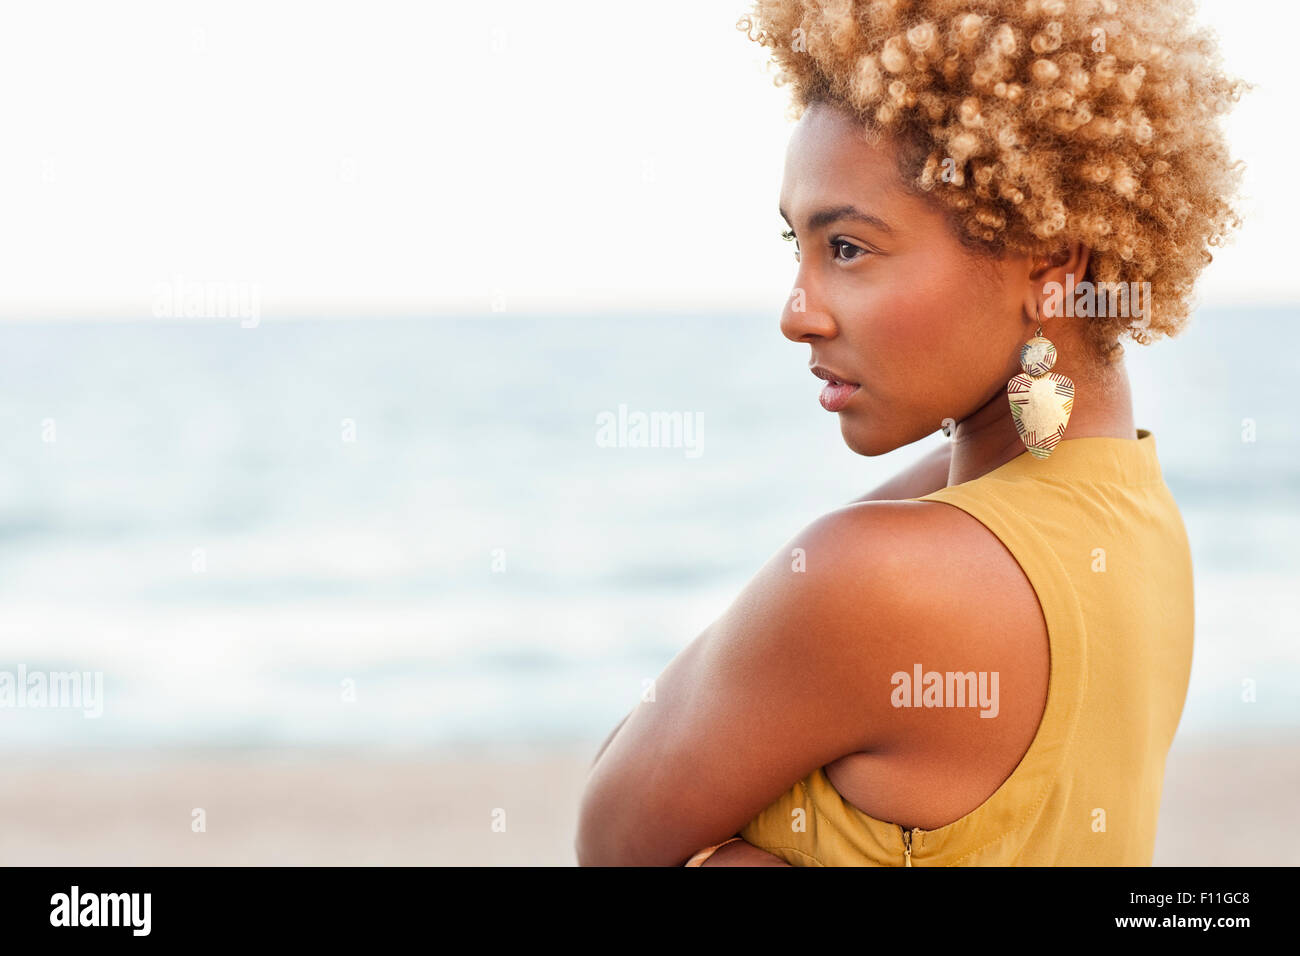 Profil de pensive black woman at beach Banque D'Images